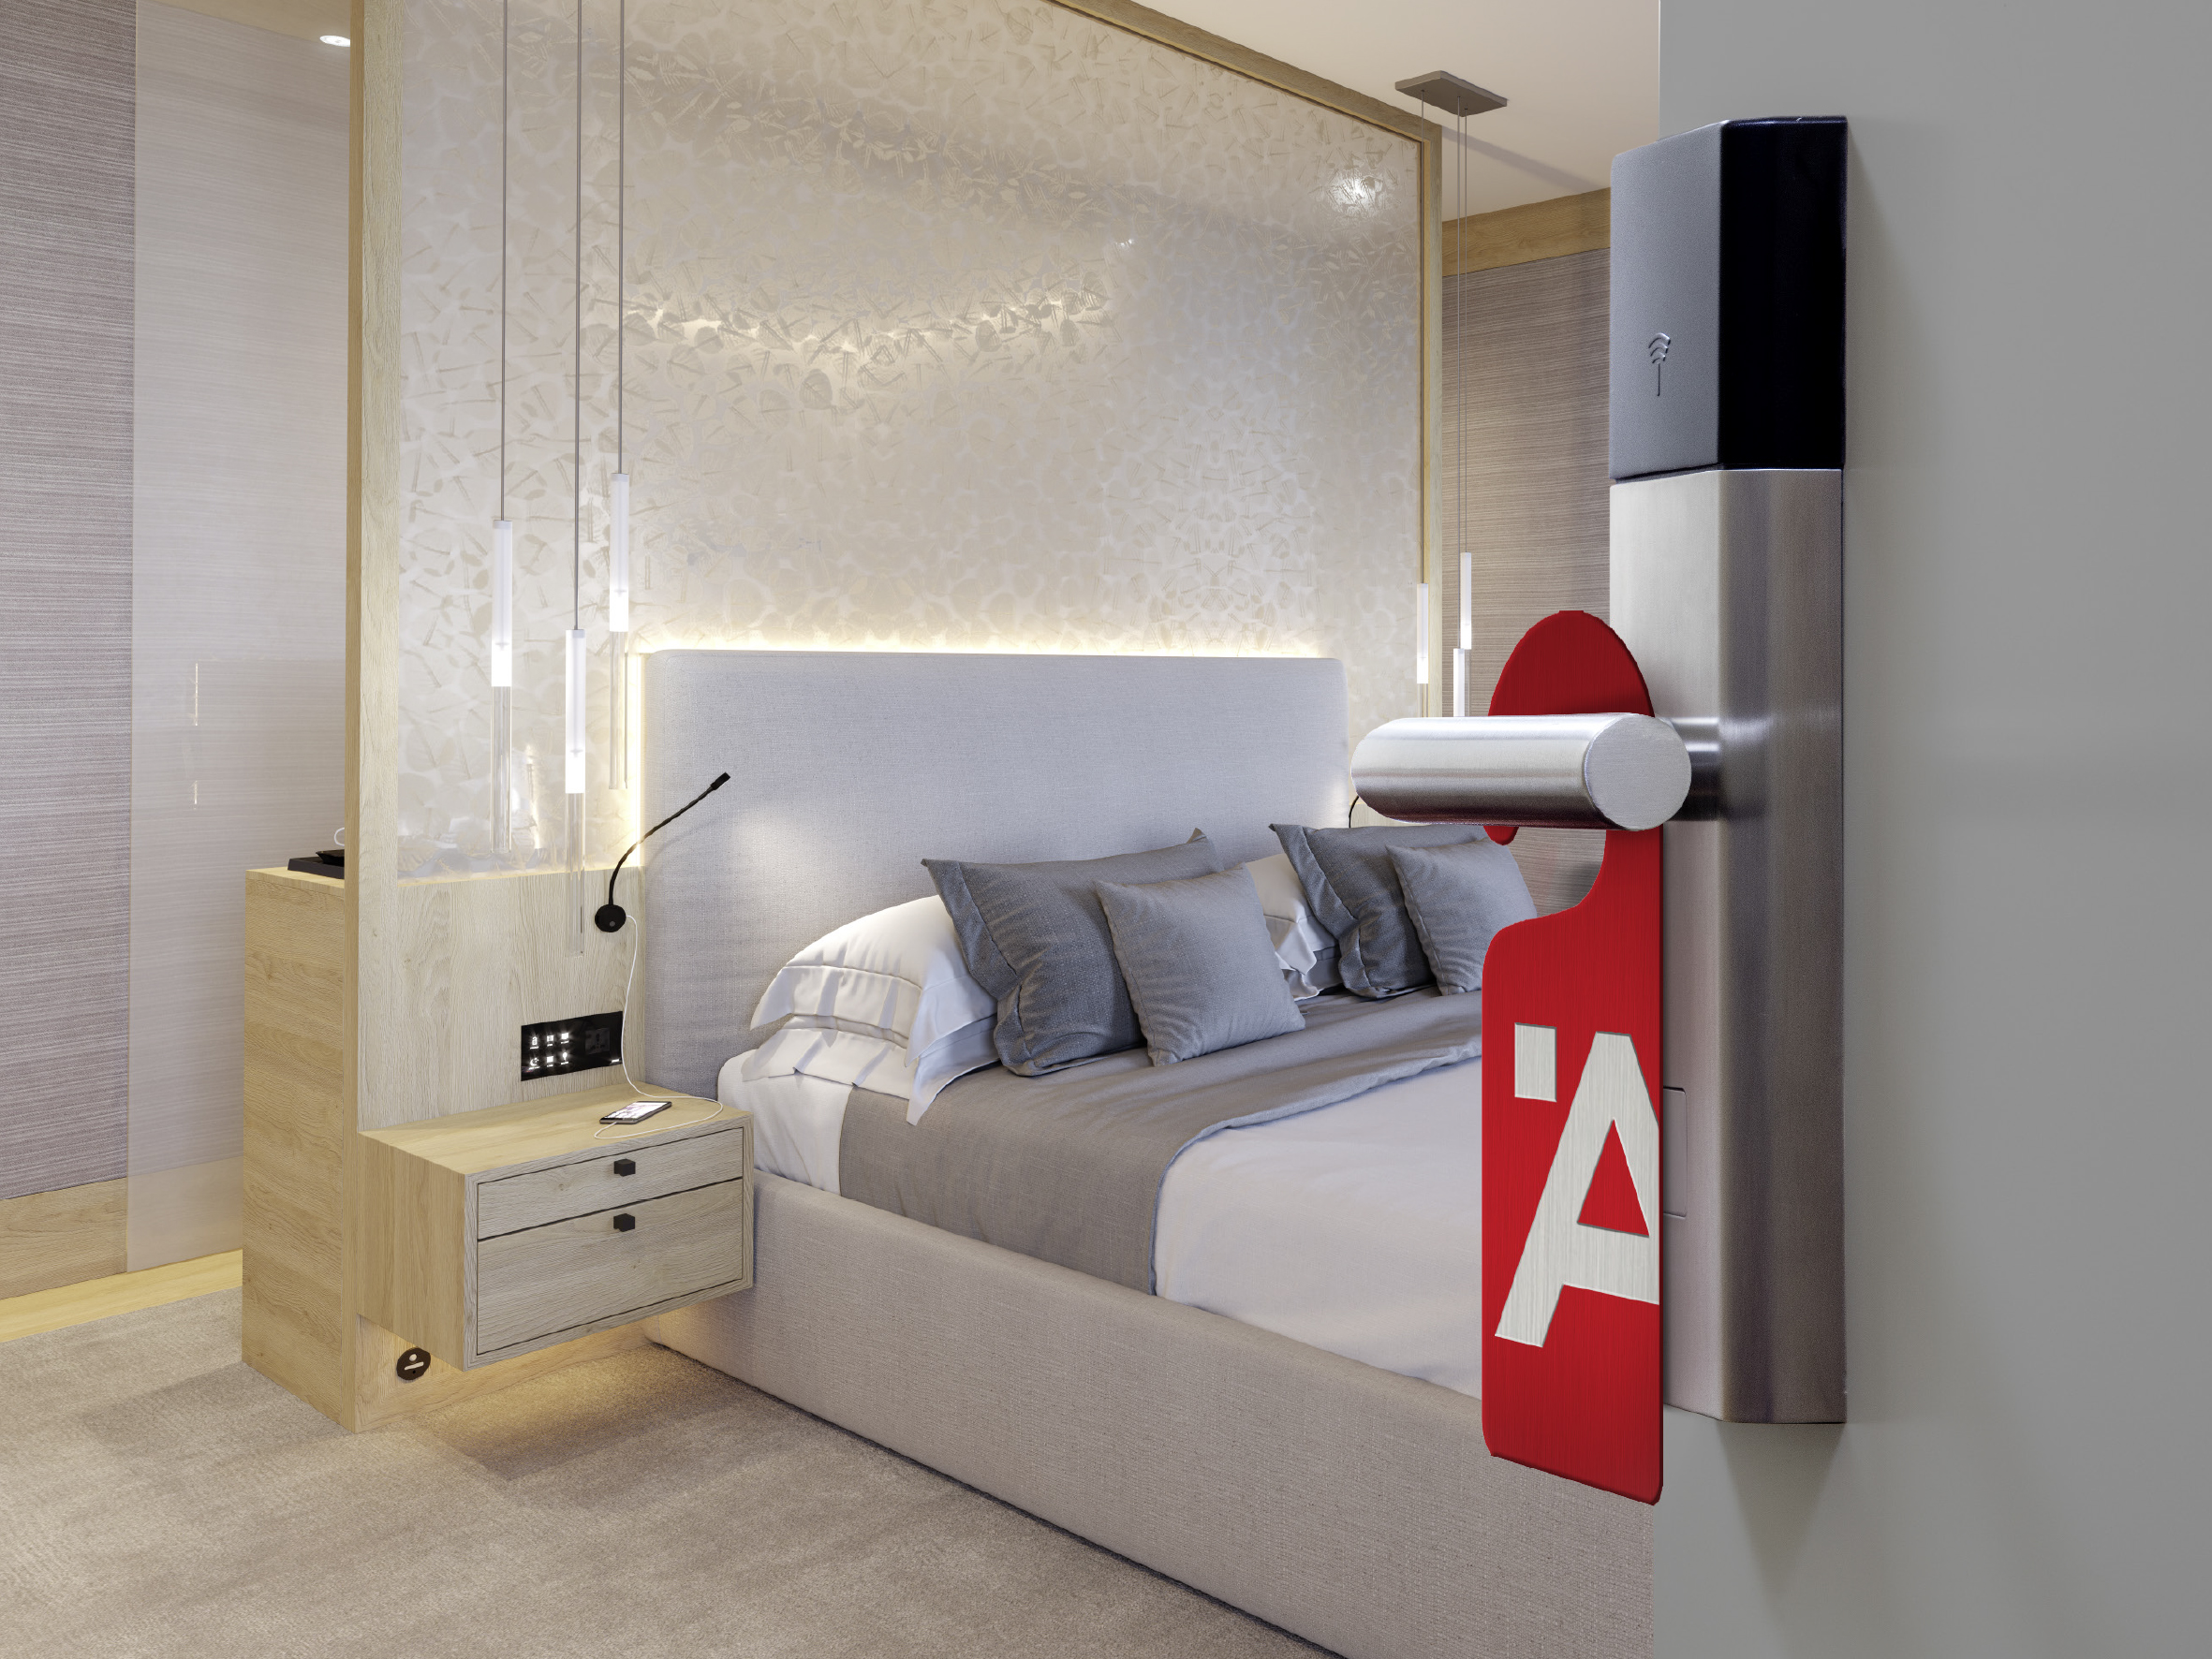 One Room, one Face – one Style. Häfele schafft mit seinem mehr als 200 Produkte umfassenden, international verfügbaren Hotelsortiment optimale Voraussetzungen für die zielgruppengerechte Ausstattung von Hotelzimmern. 